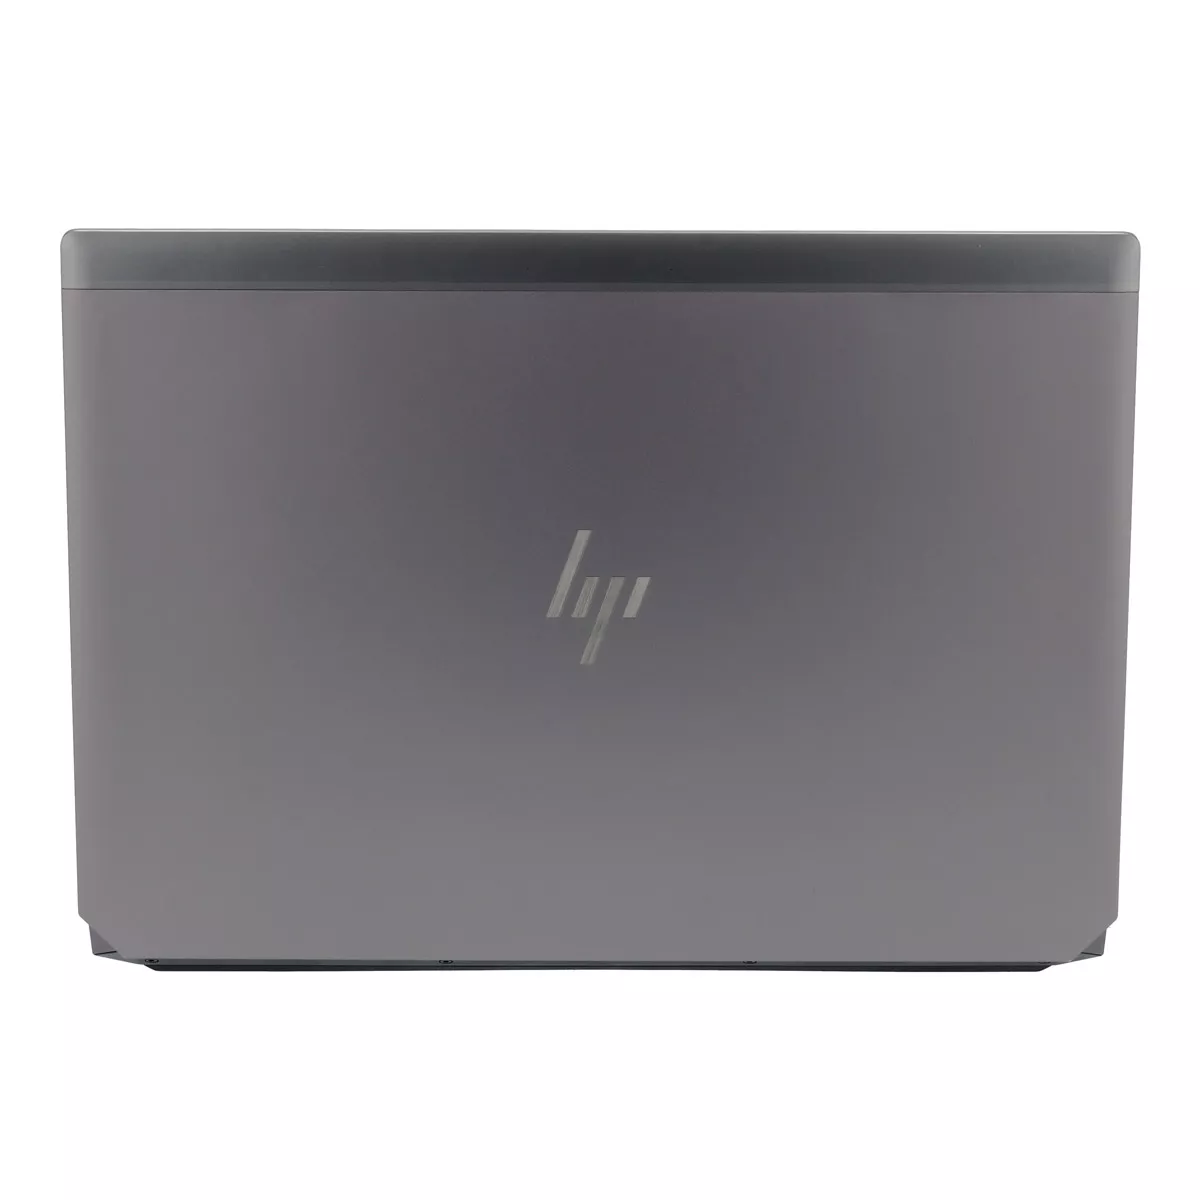 HP ZBook 15 G5 Core i7 8750H nVidia Quadro P1000M 512 GB M.2 nVME SSD Webcam A+